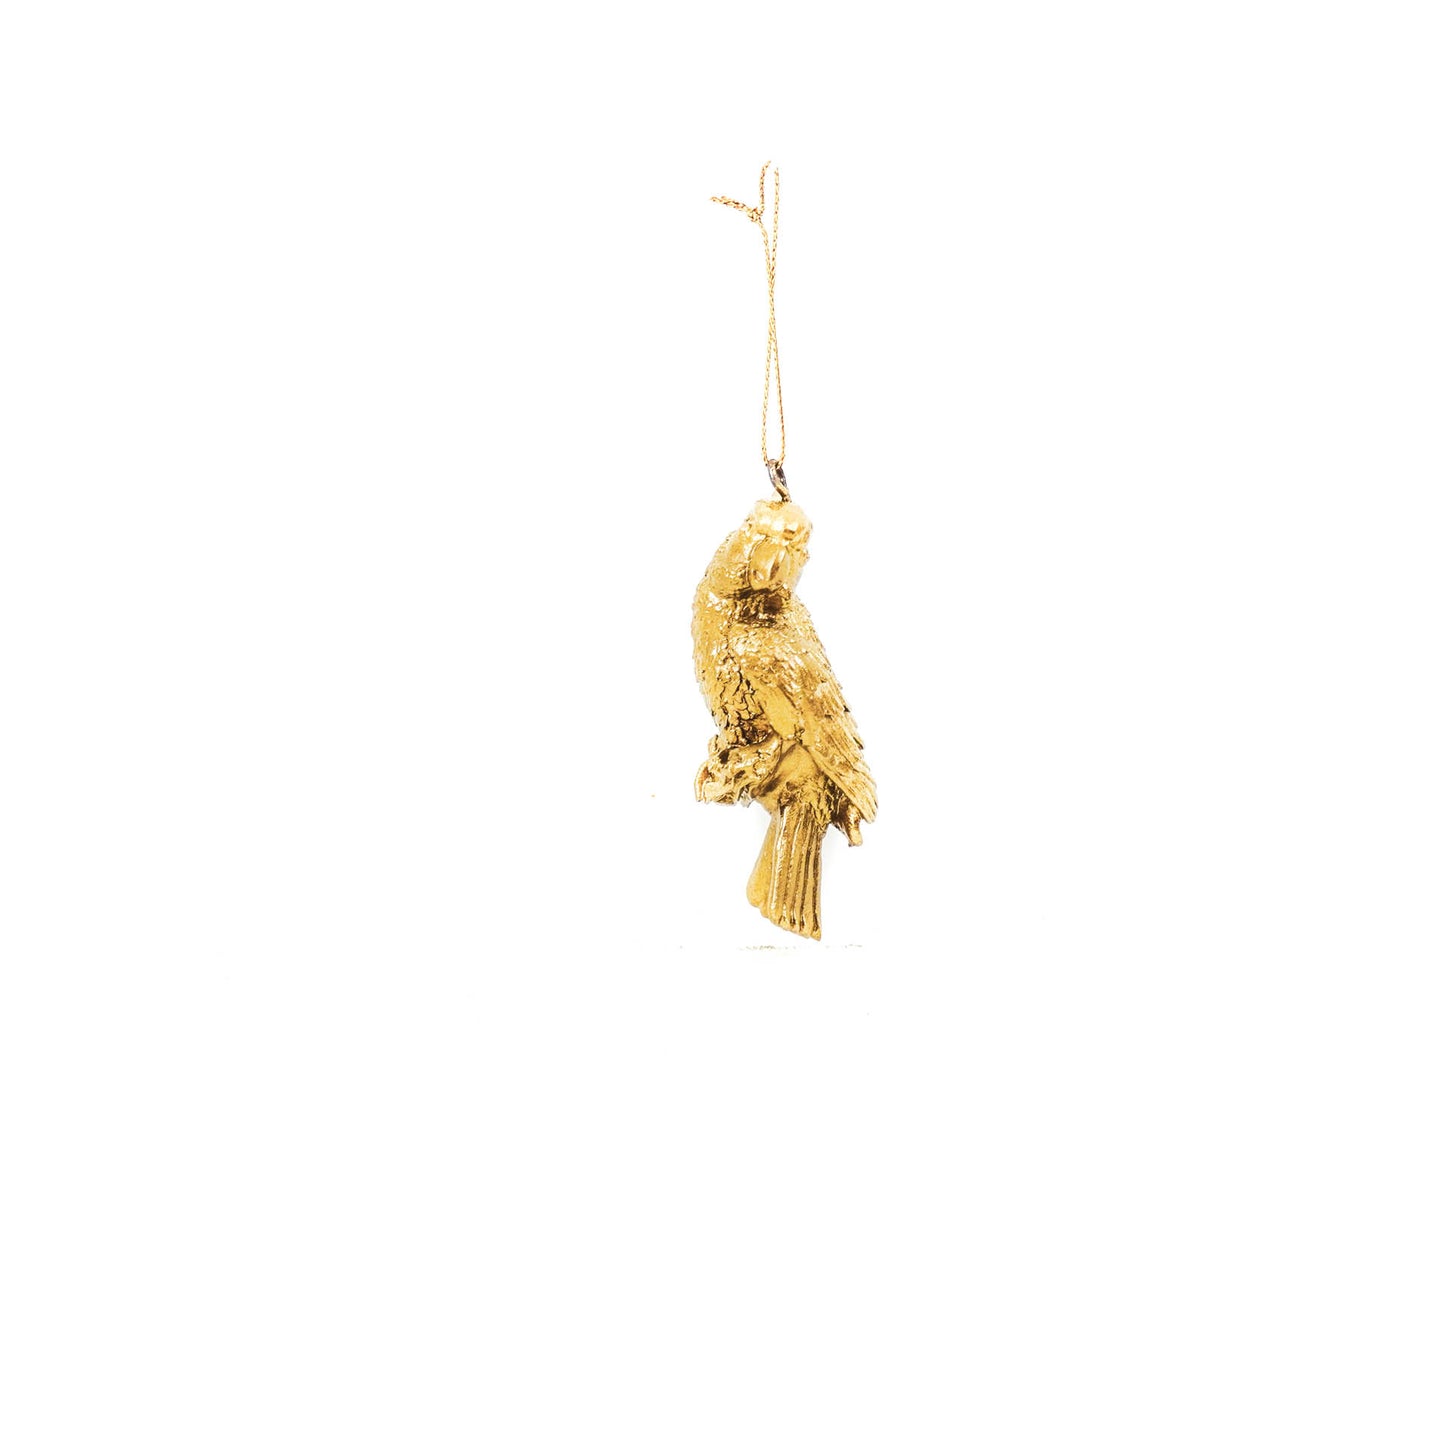 HV Parrot Hanger - Gold